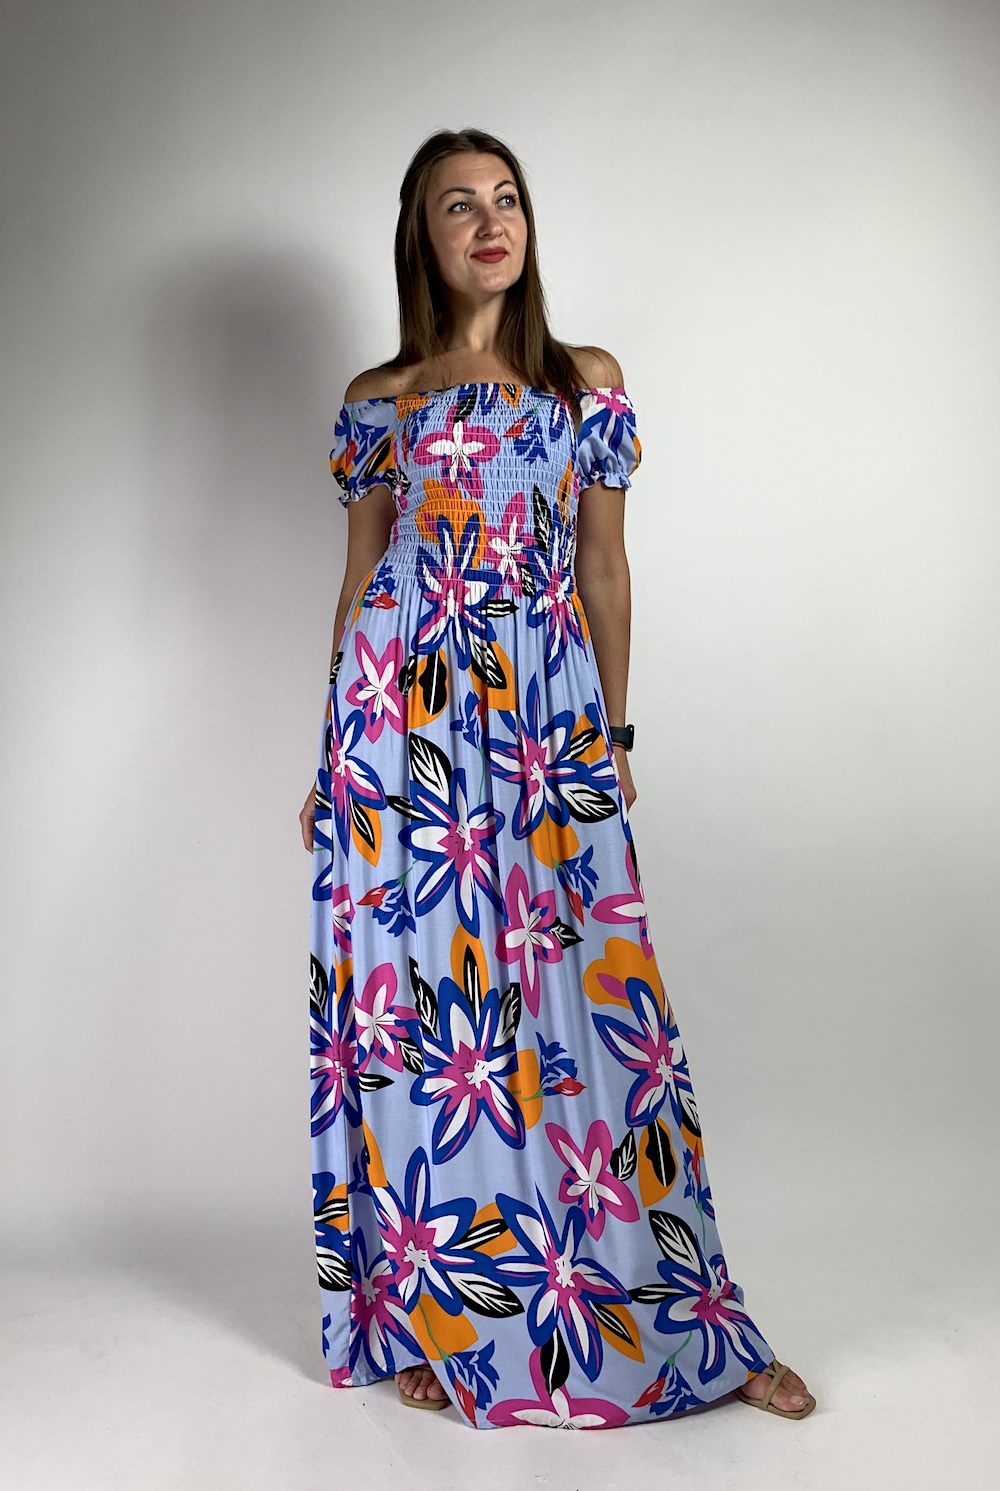 Длинное легкое хлопковое платье василькового цвета с яркими цветами